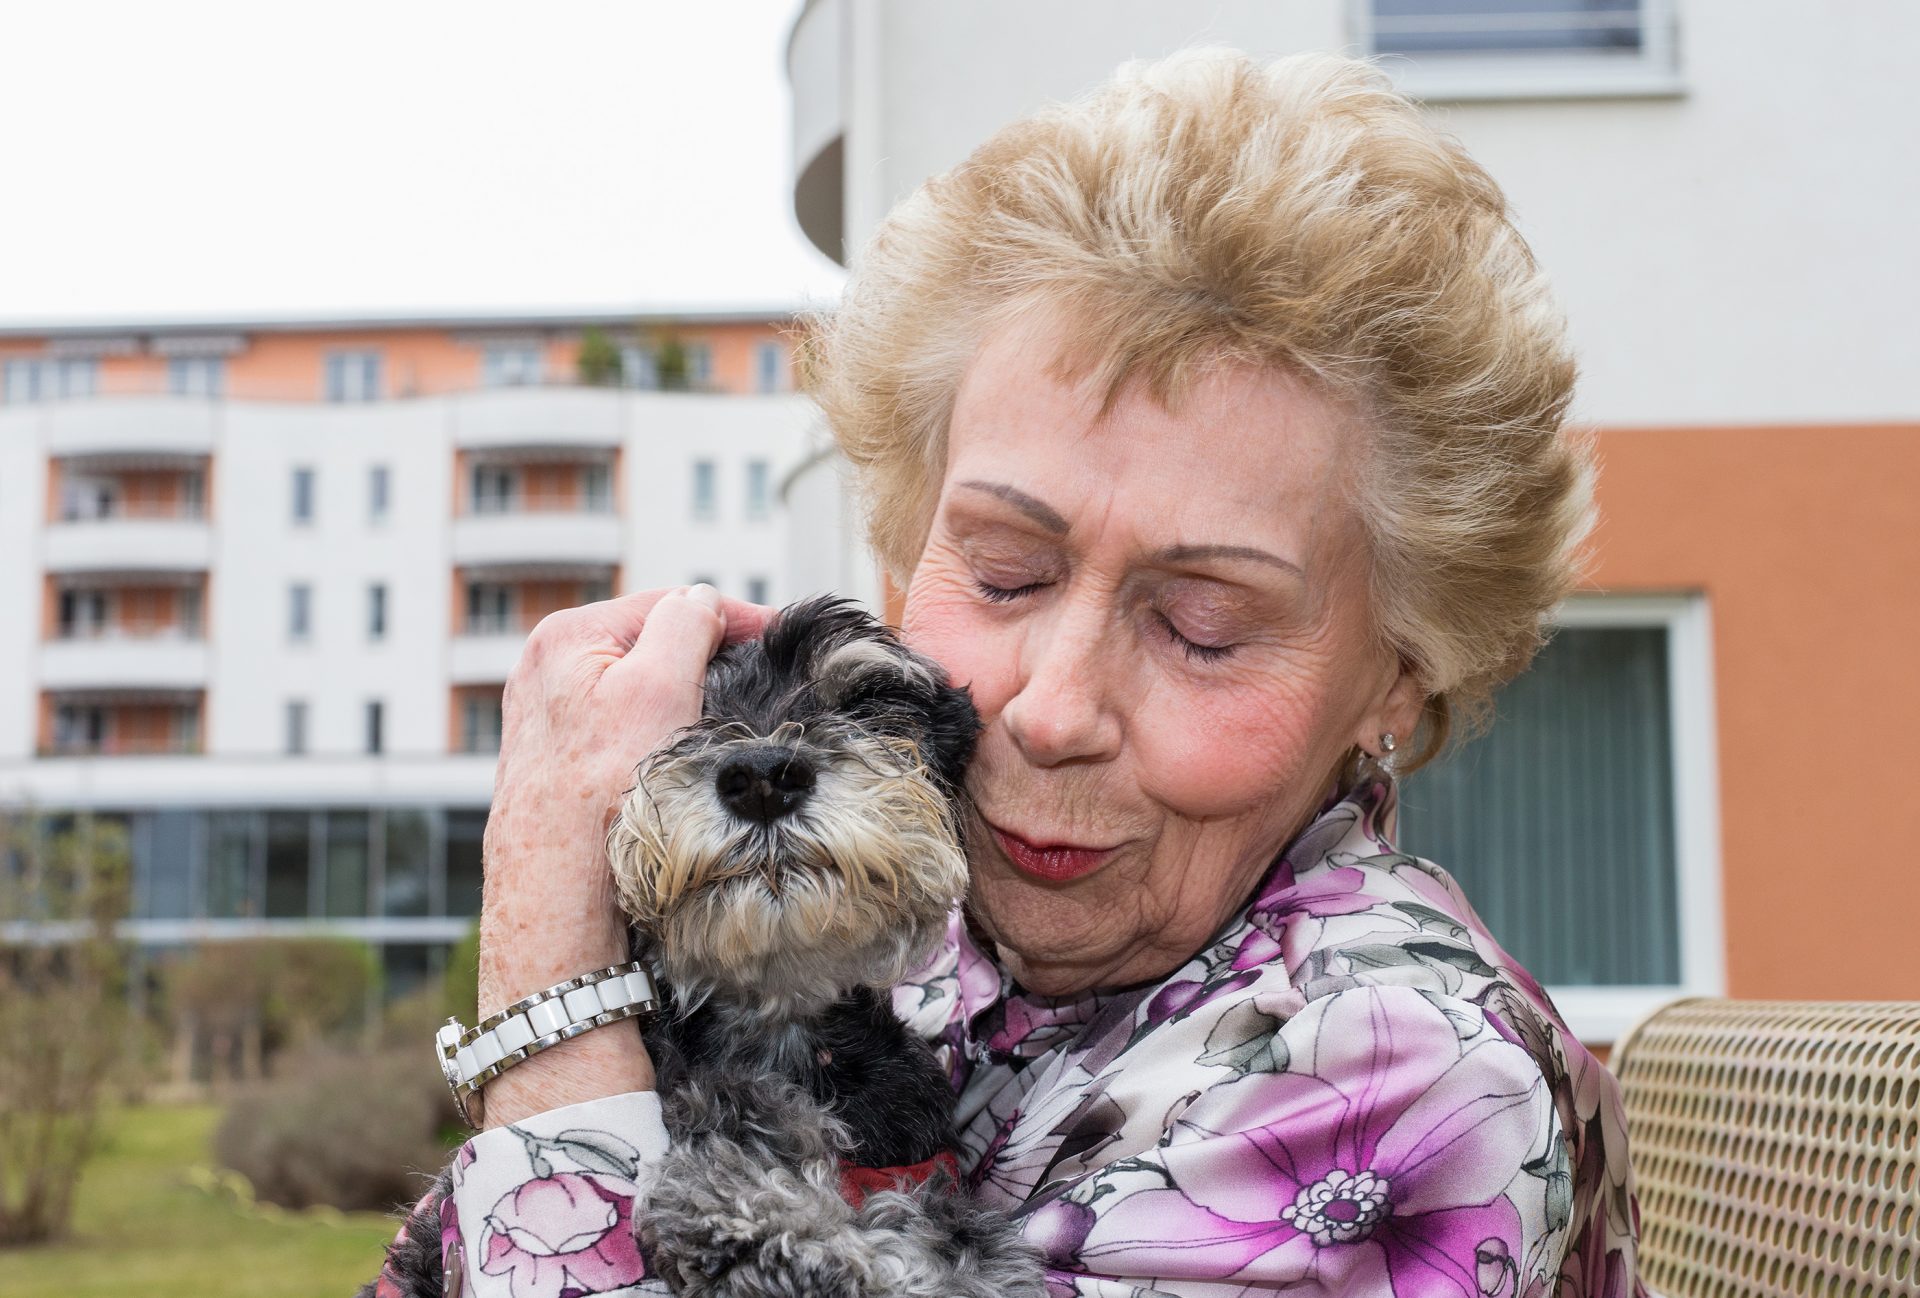 Fotograf Werner Krüper porträtiert Senioren und ihre vierbeinigen Lieblinge. Bildquelle: wernerkrueper.de